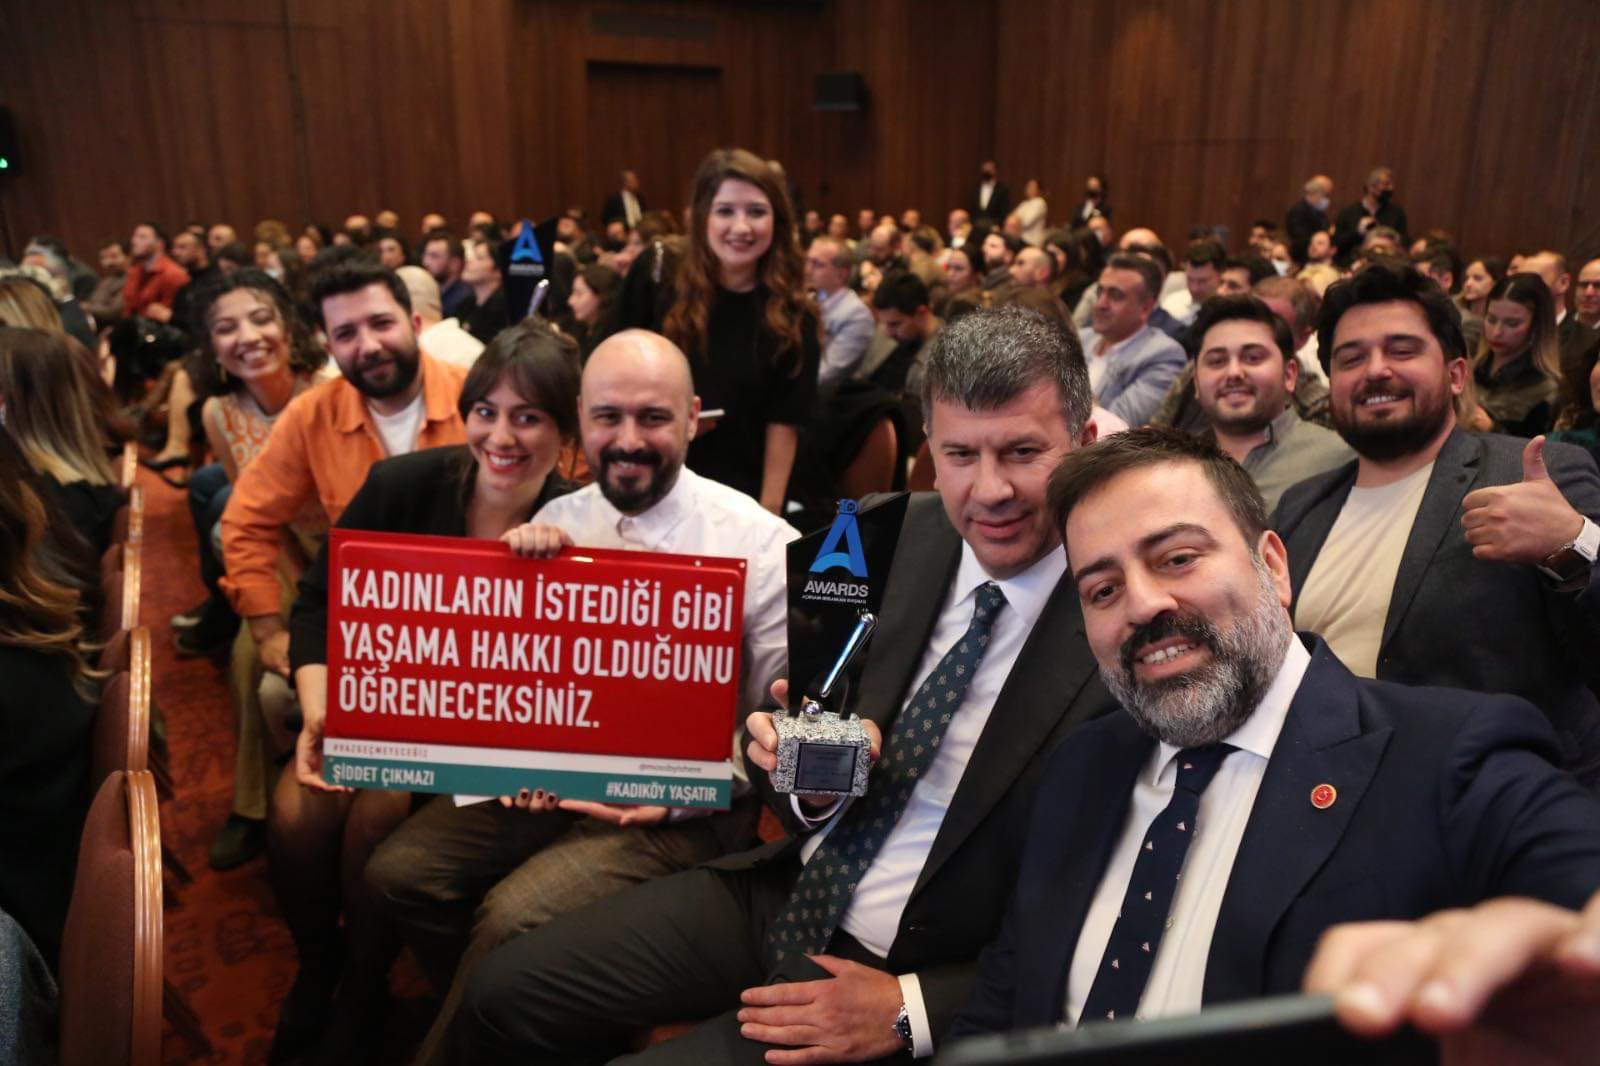 Kadıköy Belediyesi'nin farkındalık yaratan projesine önemli ödül - Resim : 3